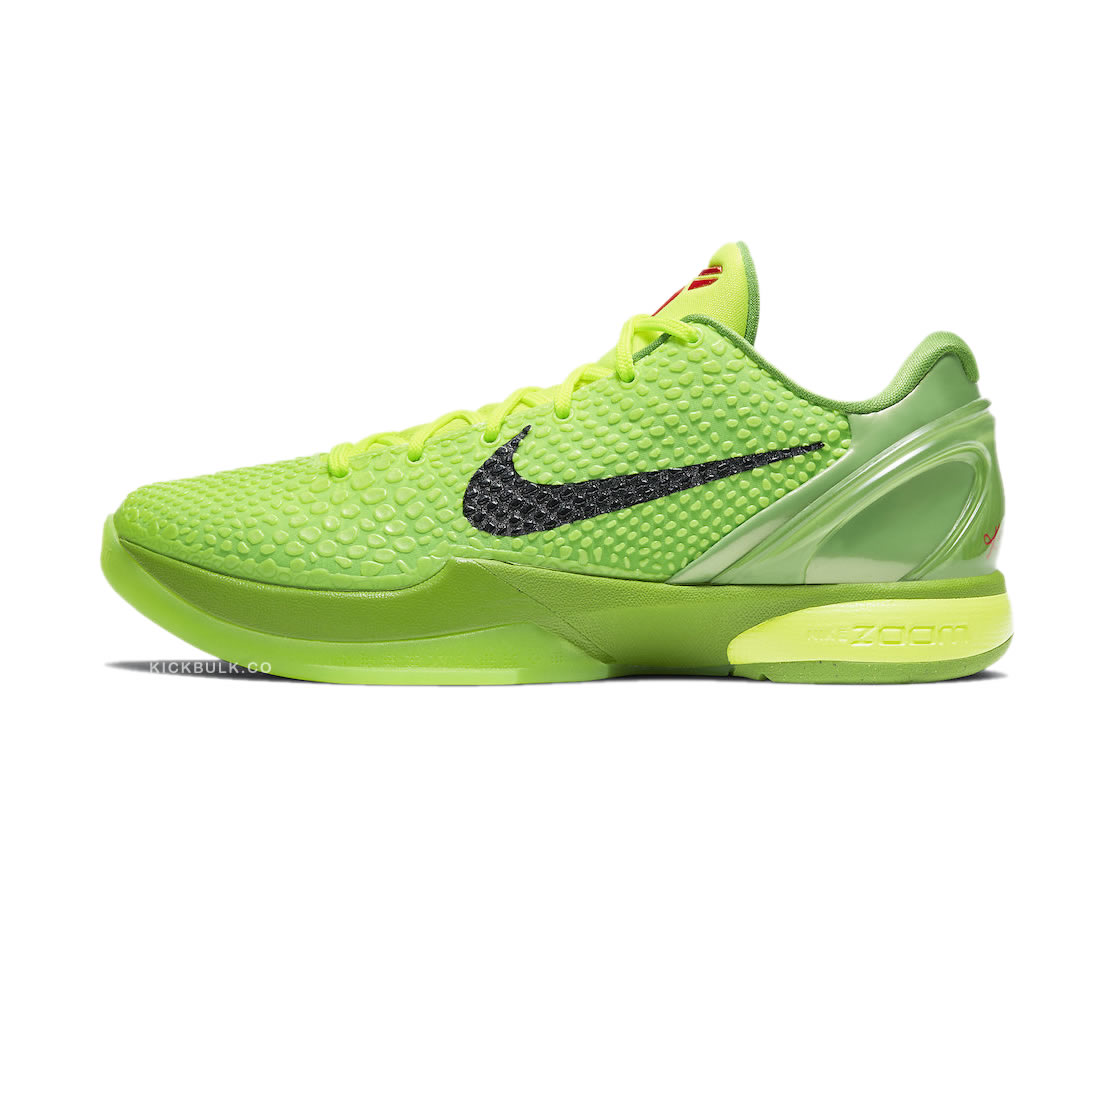 Nike Zoom Kobe 6 Protro Grinch Cw2190 300 1 - www.kickbulk.co